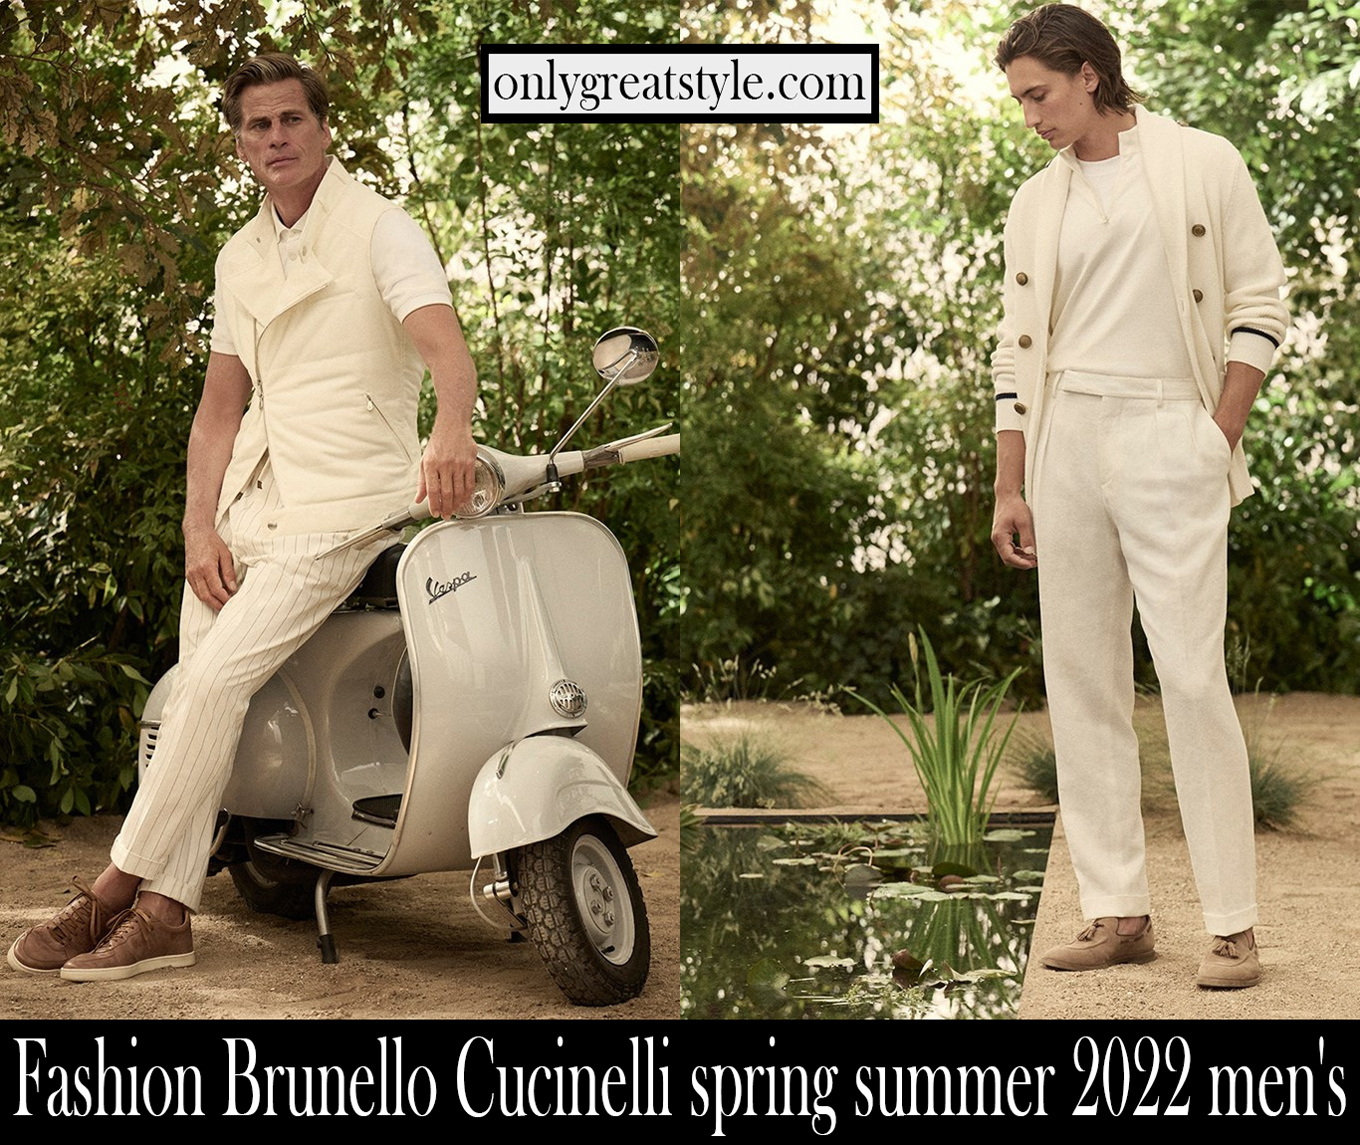 Fashion Brunello Cucinelli spring summer 2022 mens